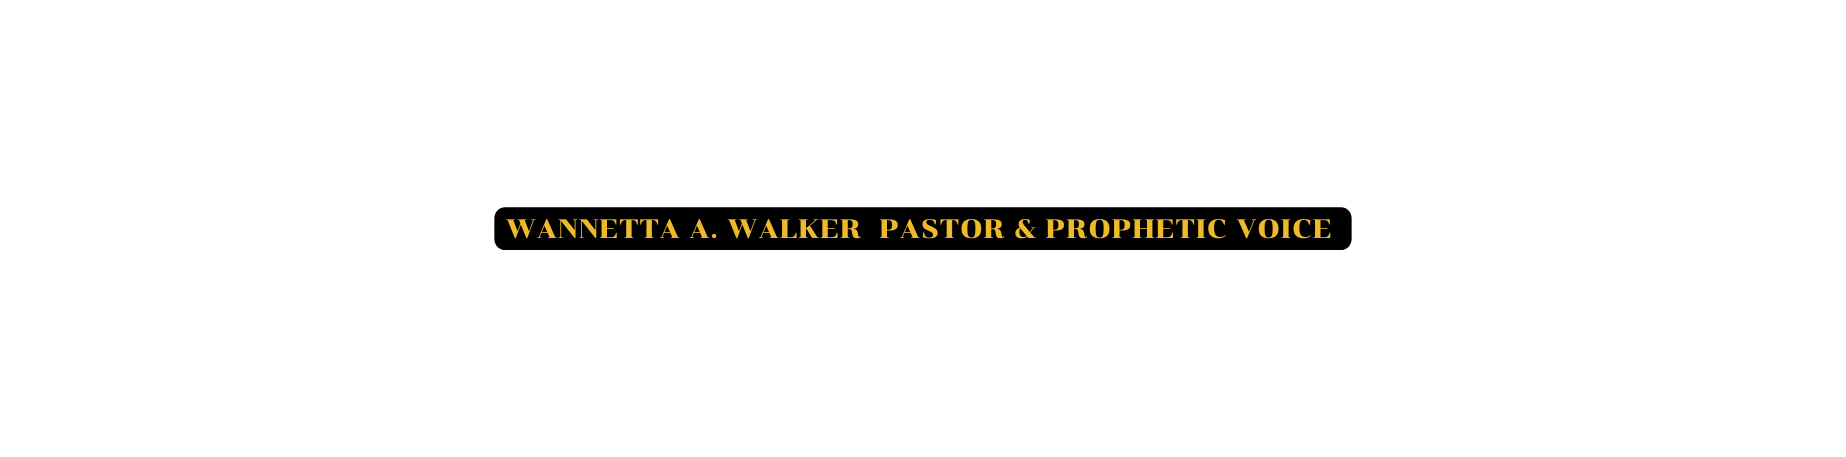 Wannetta A wALKER pASTOR PROPHETic voice